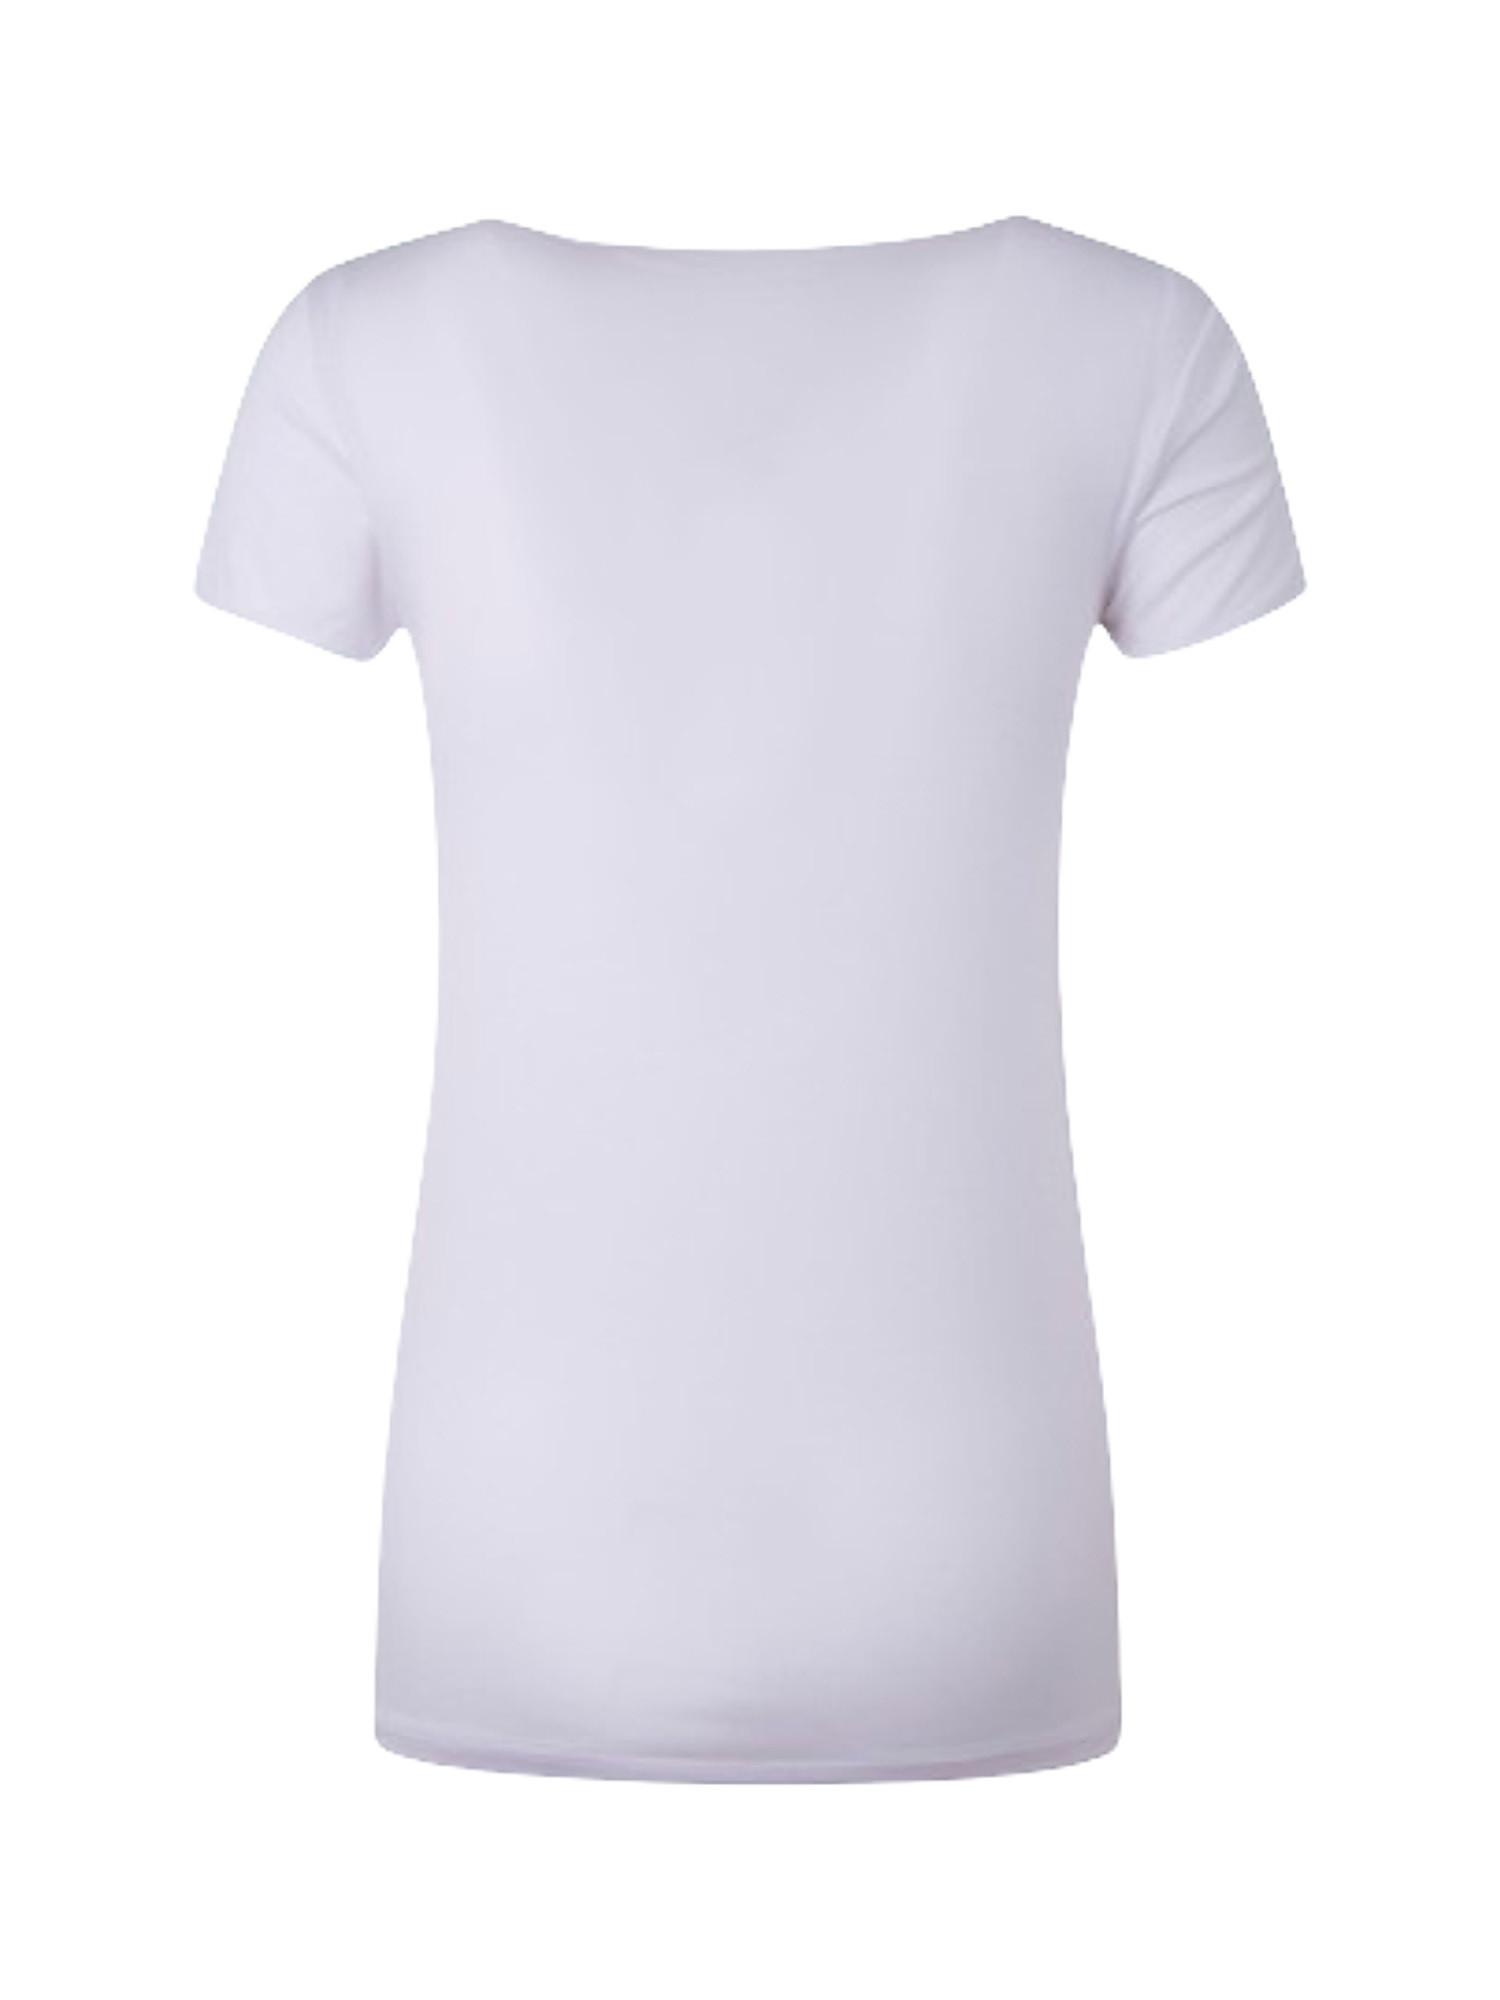 Cameron portobello' logo t-shirt, White, large image number 1